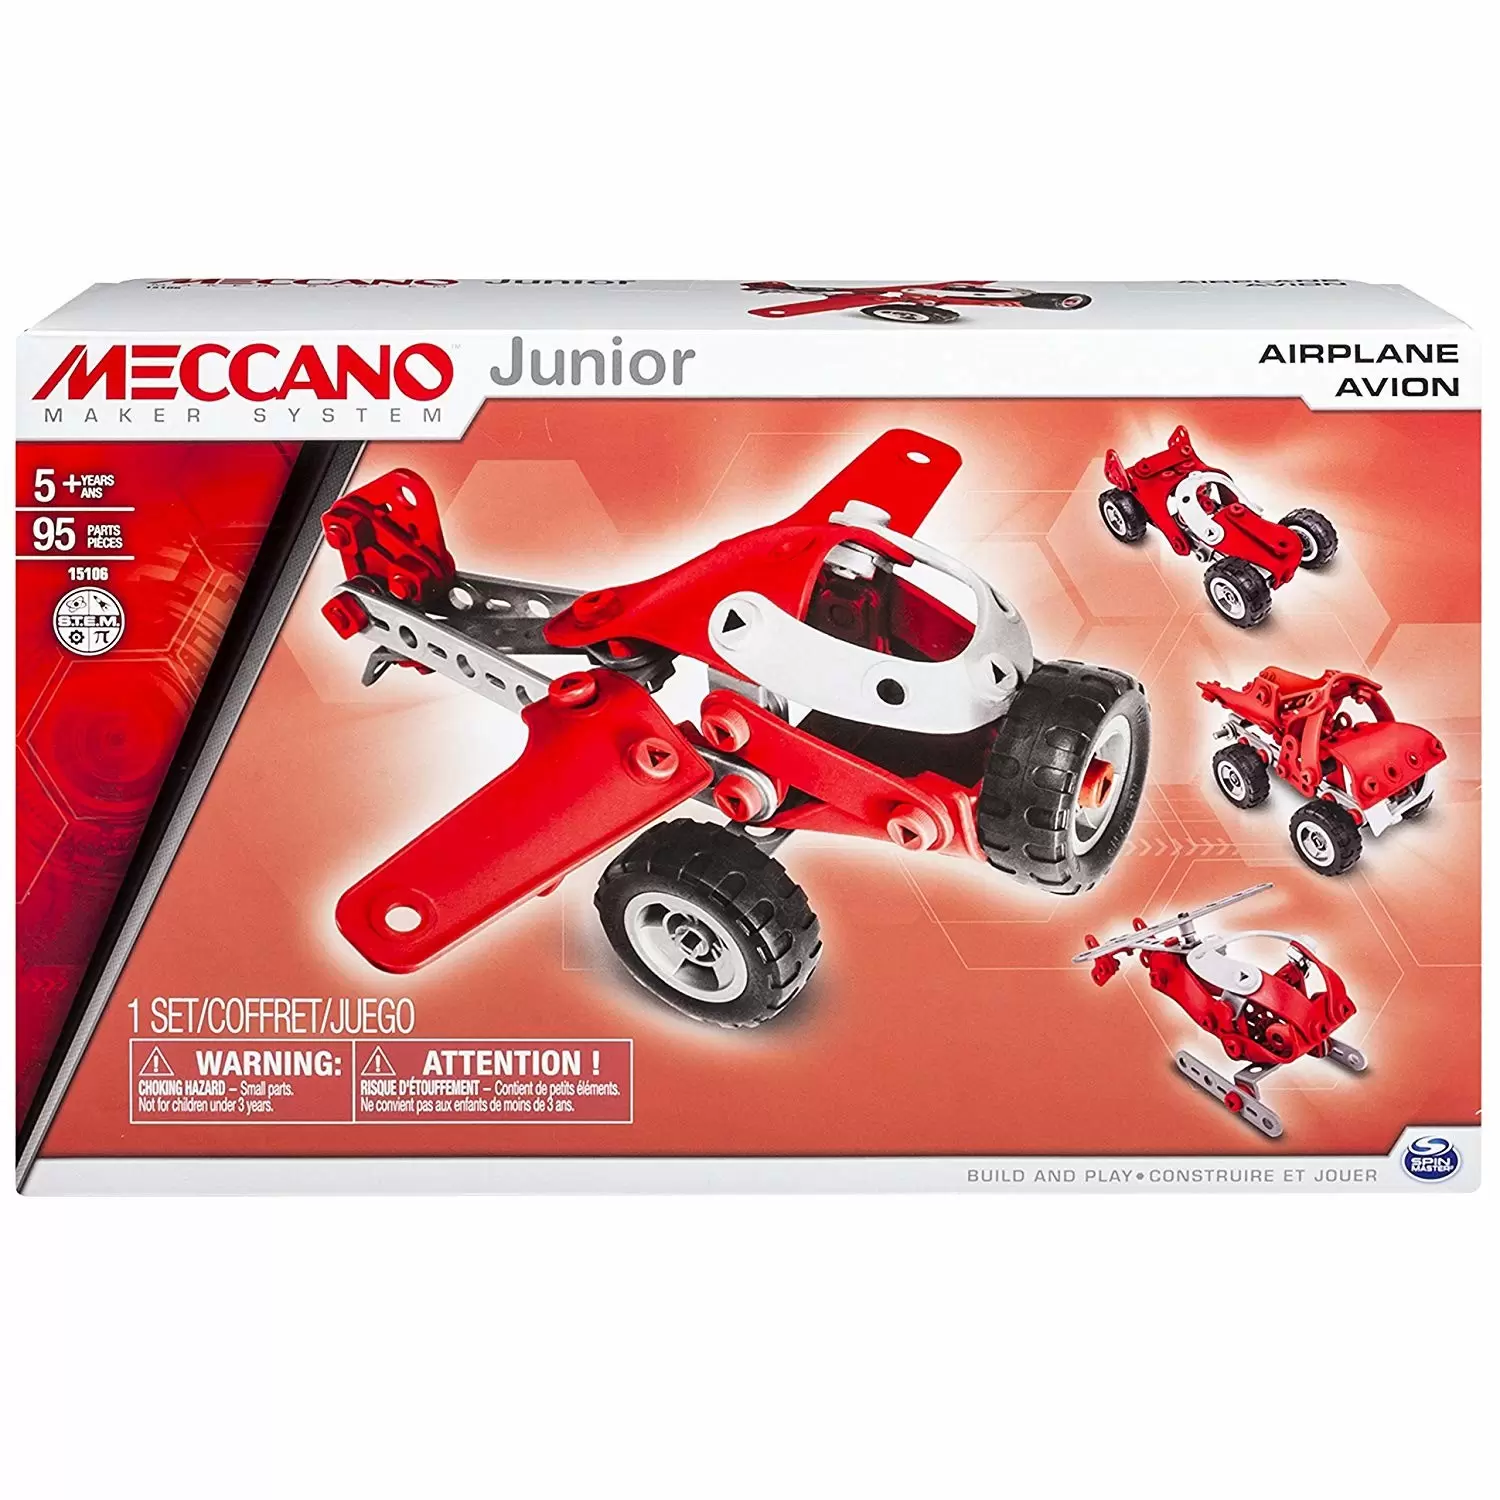 Meccano - Meccano Junior Avion